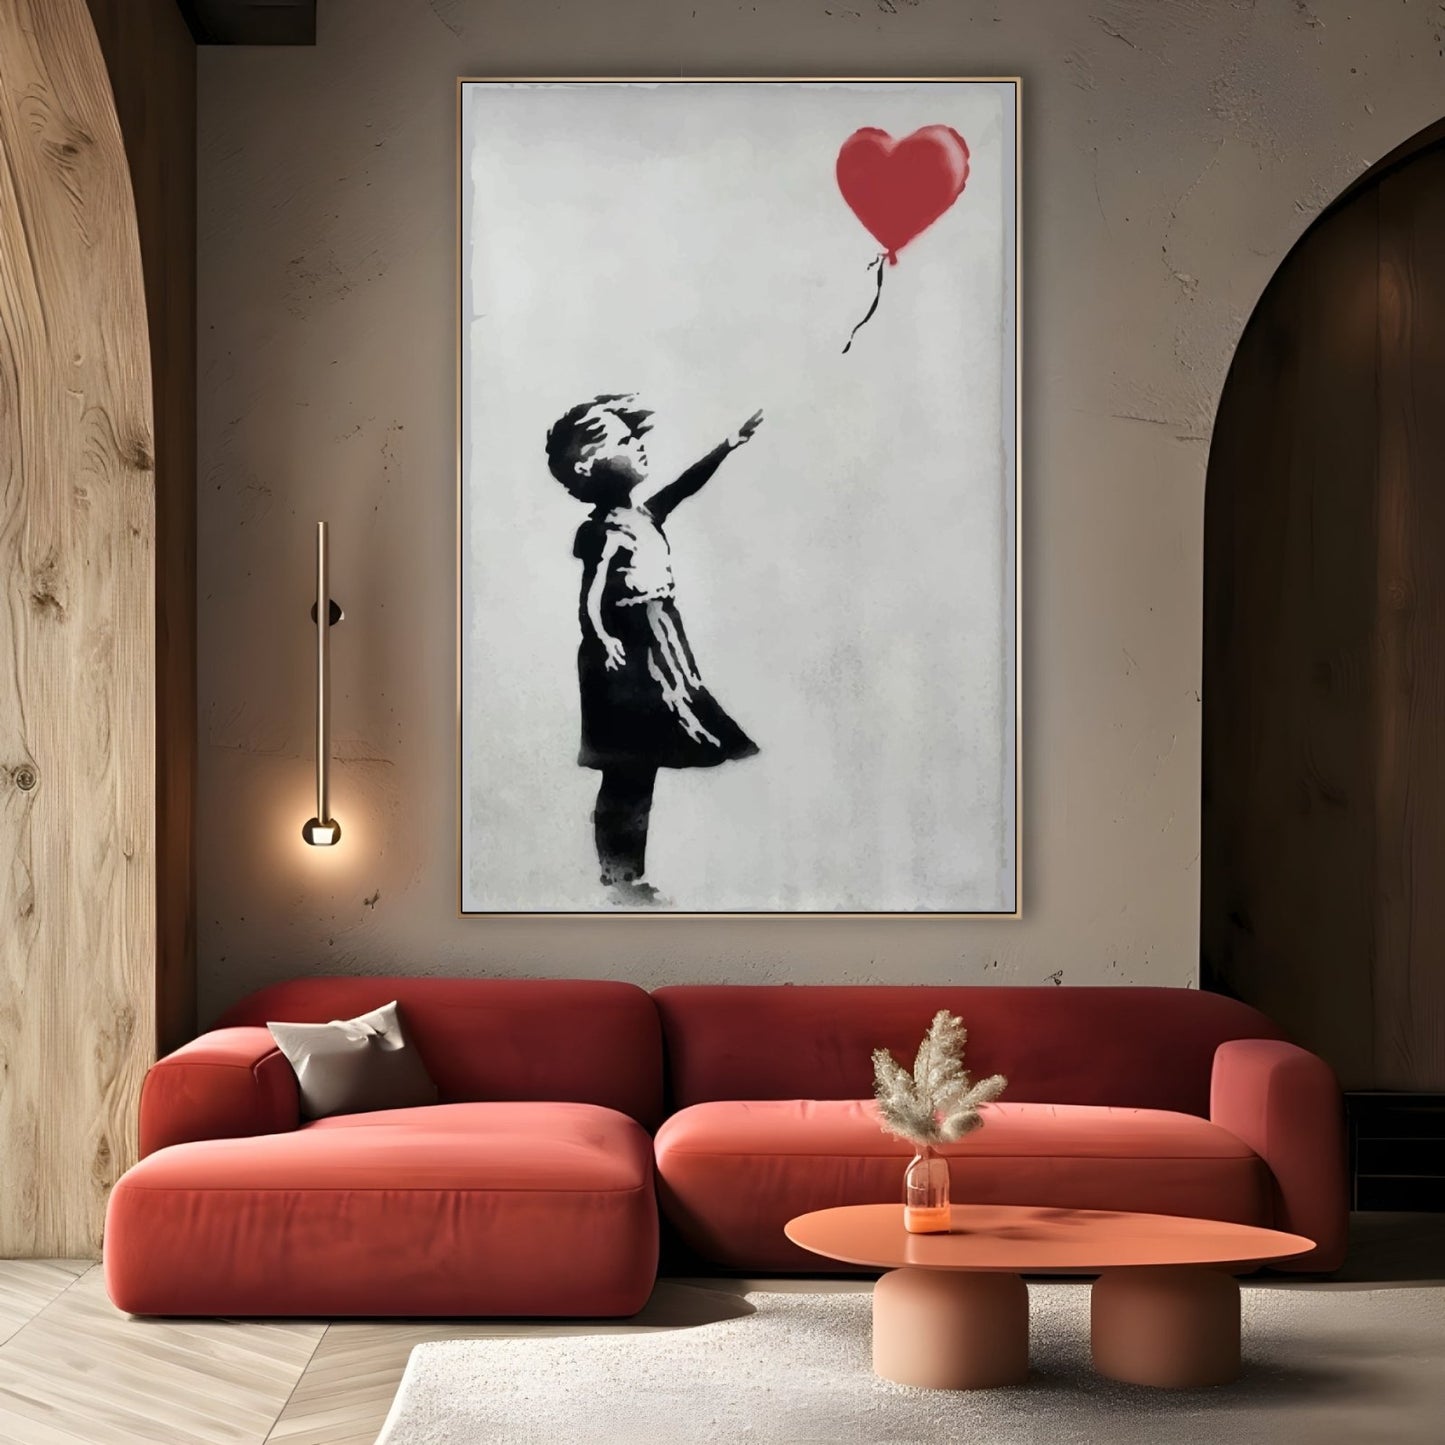 Fille au ballon, Banksy